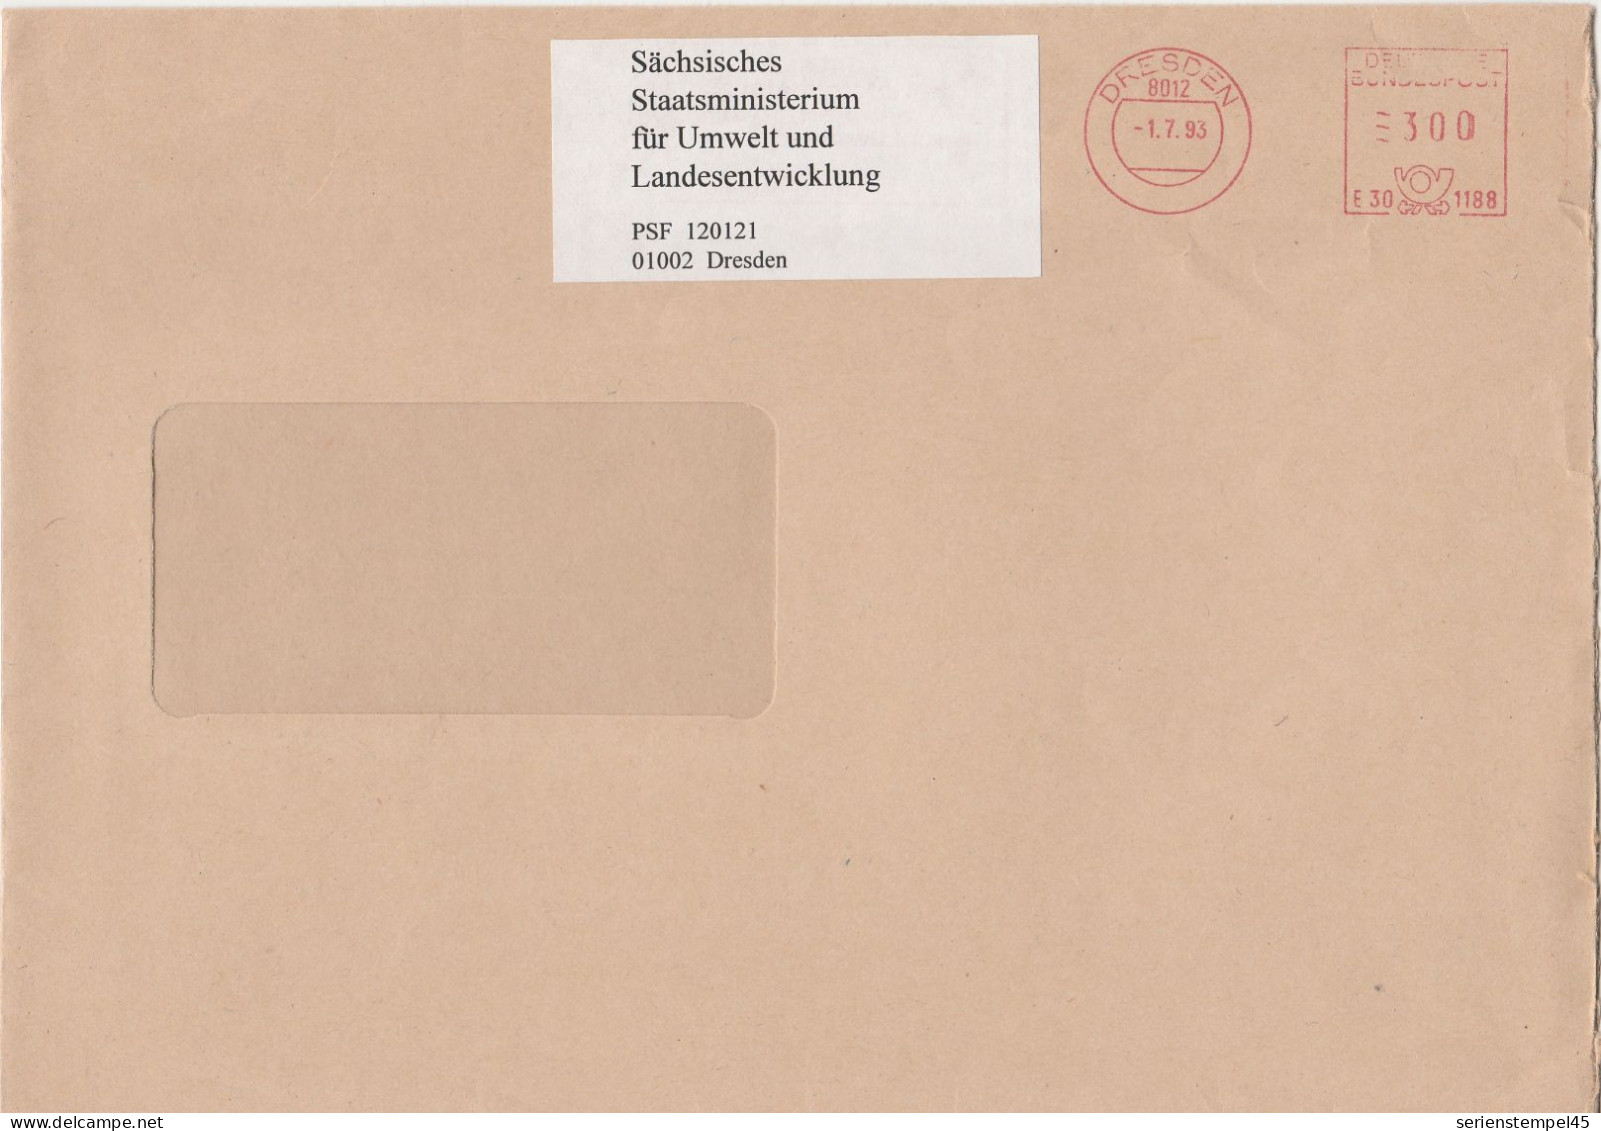 Deutsche Bundespost Brief Mit Freistempel VGO PLZ Oben Dresden 1993 Sächsisches Staatsministerium E30 1188 Mit Überklebe - Maschinenstempel (EMA)